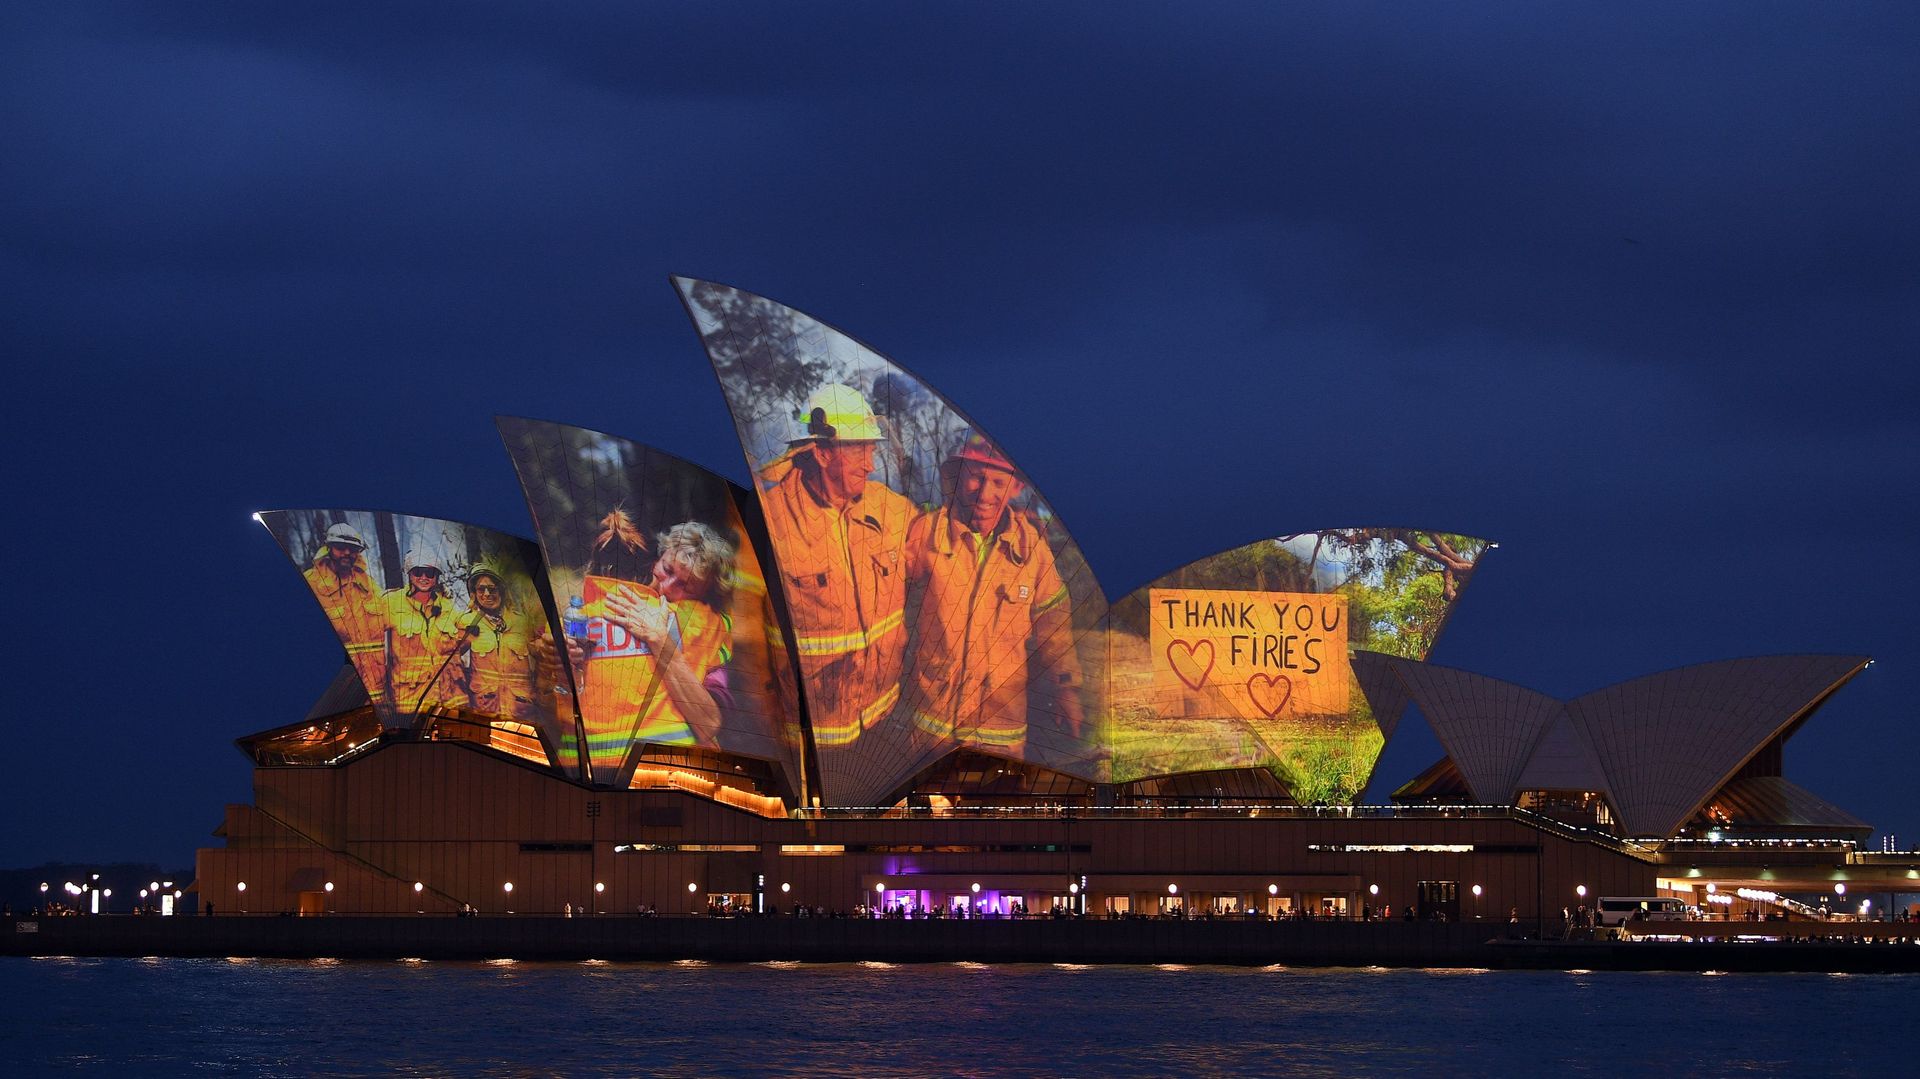 L’Opéra de Sydney rend hommage aux pompiers australiens